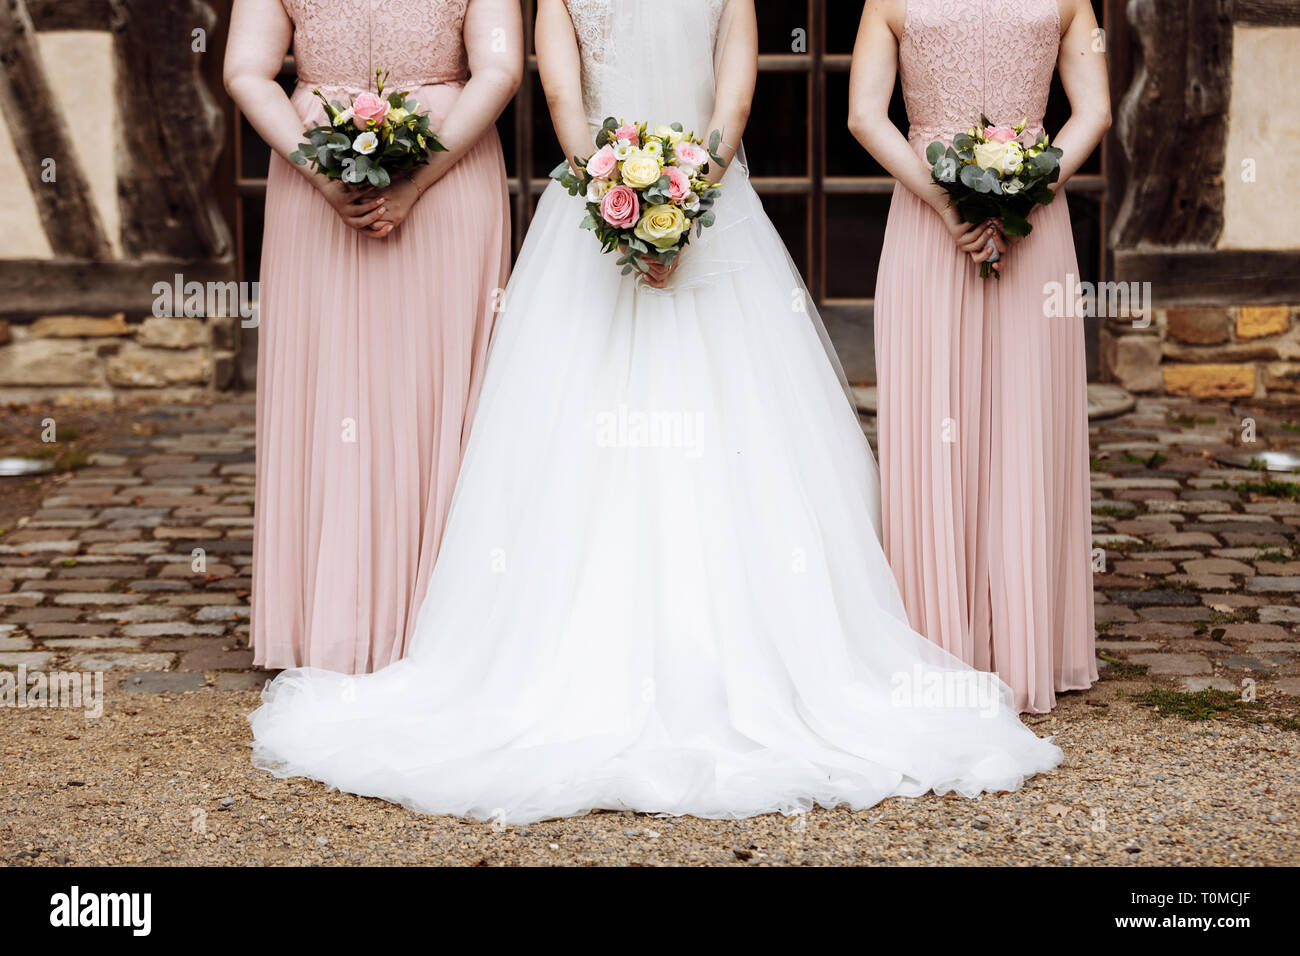 Die Braut und Brautjungfern in einem eleganten Kleid steht und die hand  Blumensträuße von Pastell rosa Blumen und Grün mit Schleife an der Natur.  Junge bea Stockfotografie - Alamy